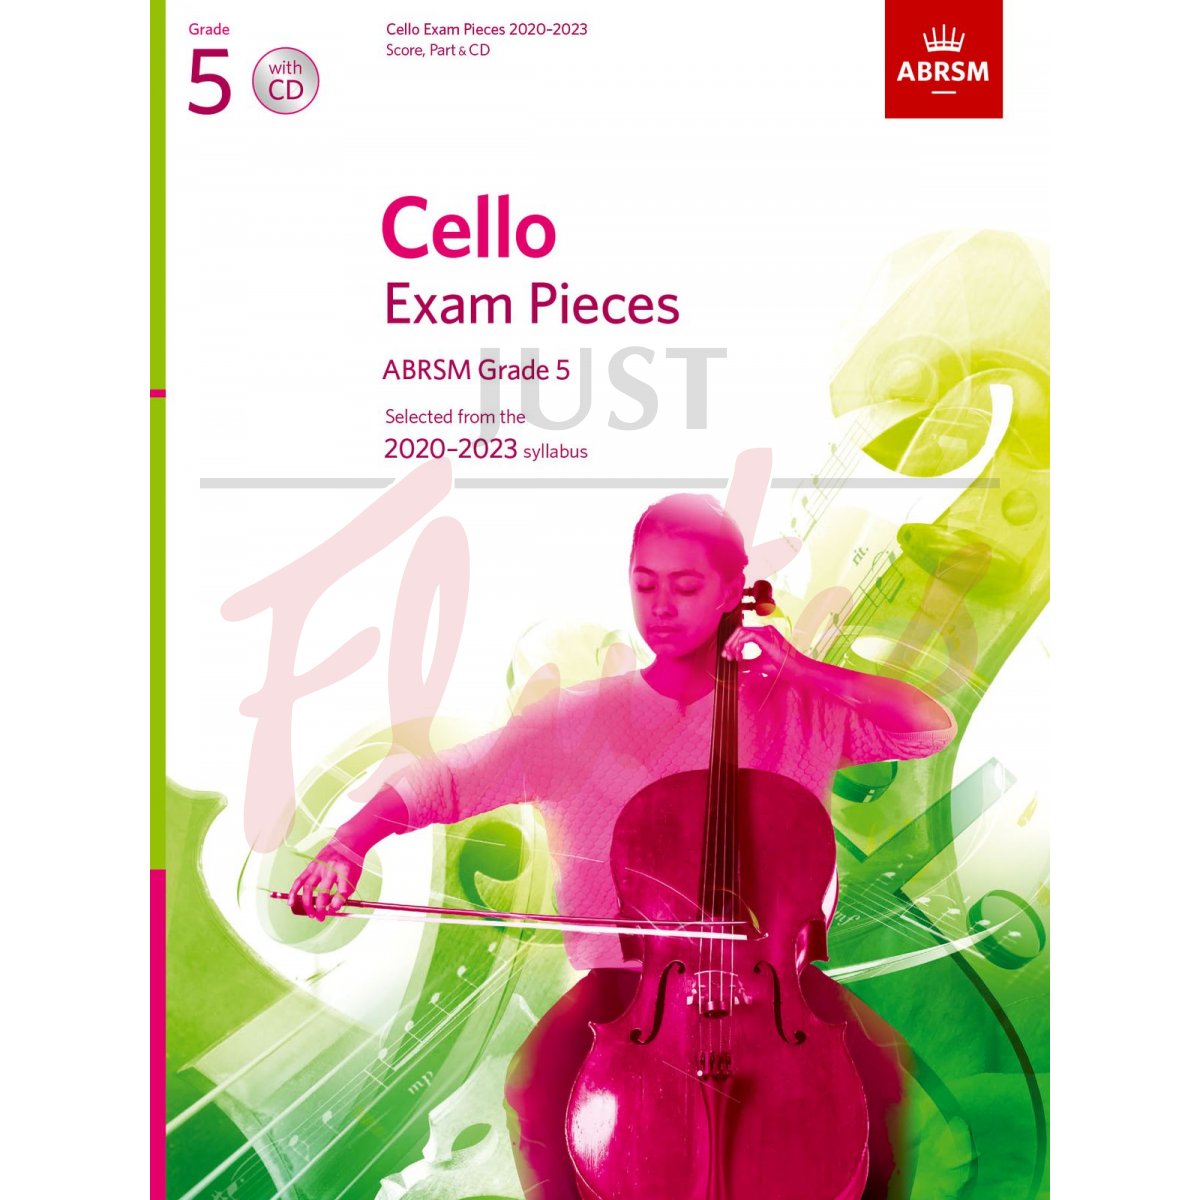 Cello Exam Pieces 2020-2023, Grade 5